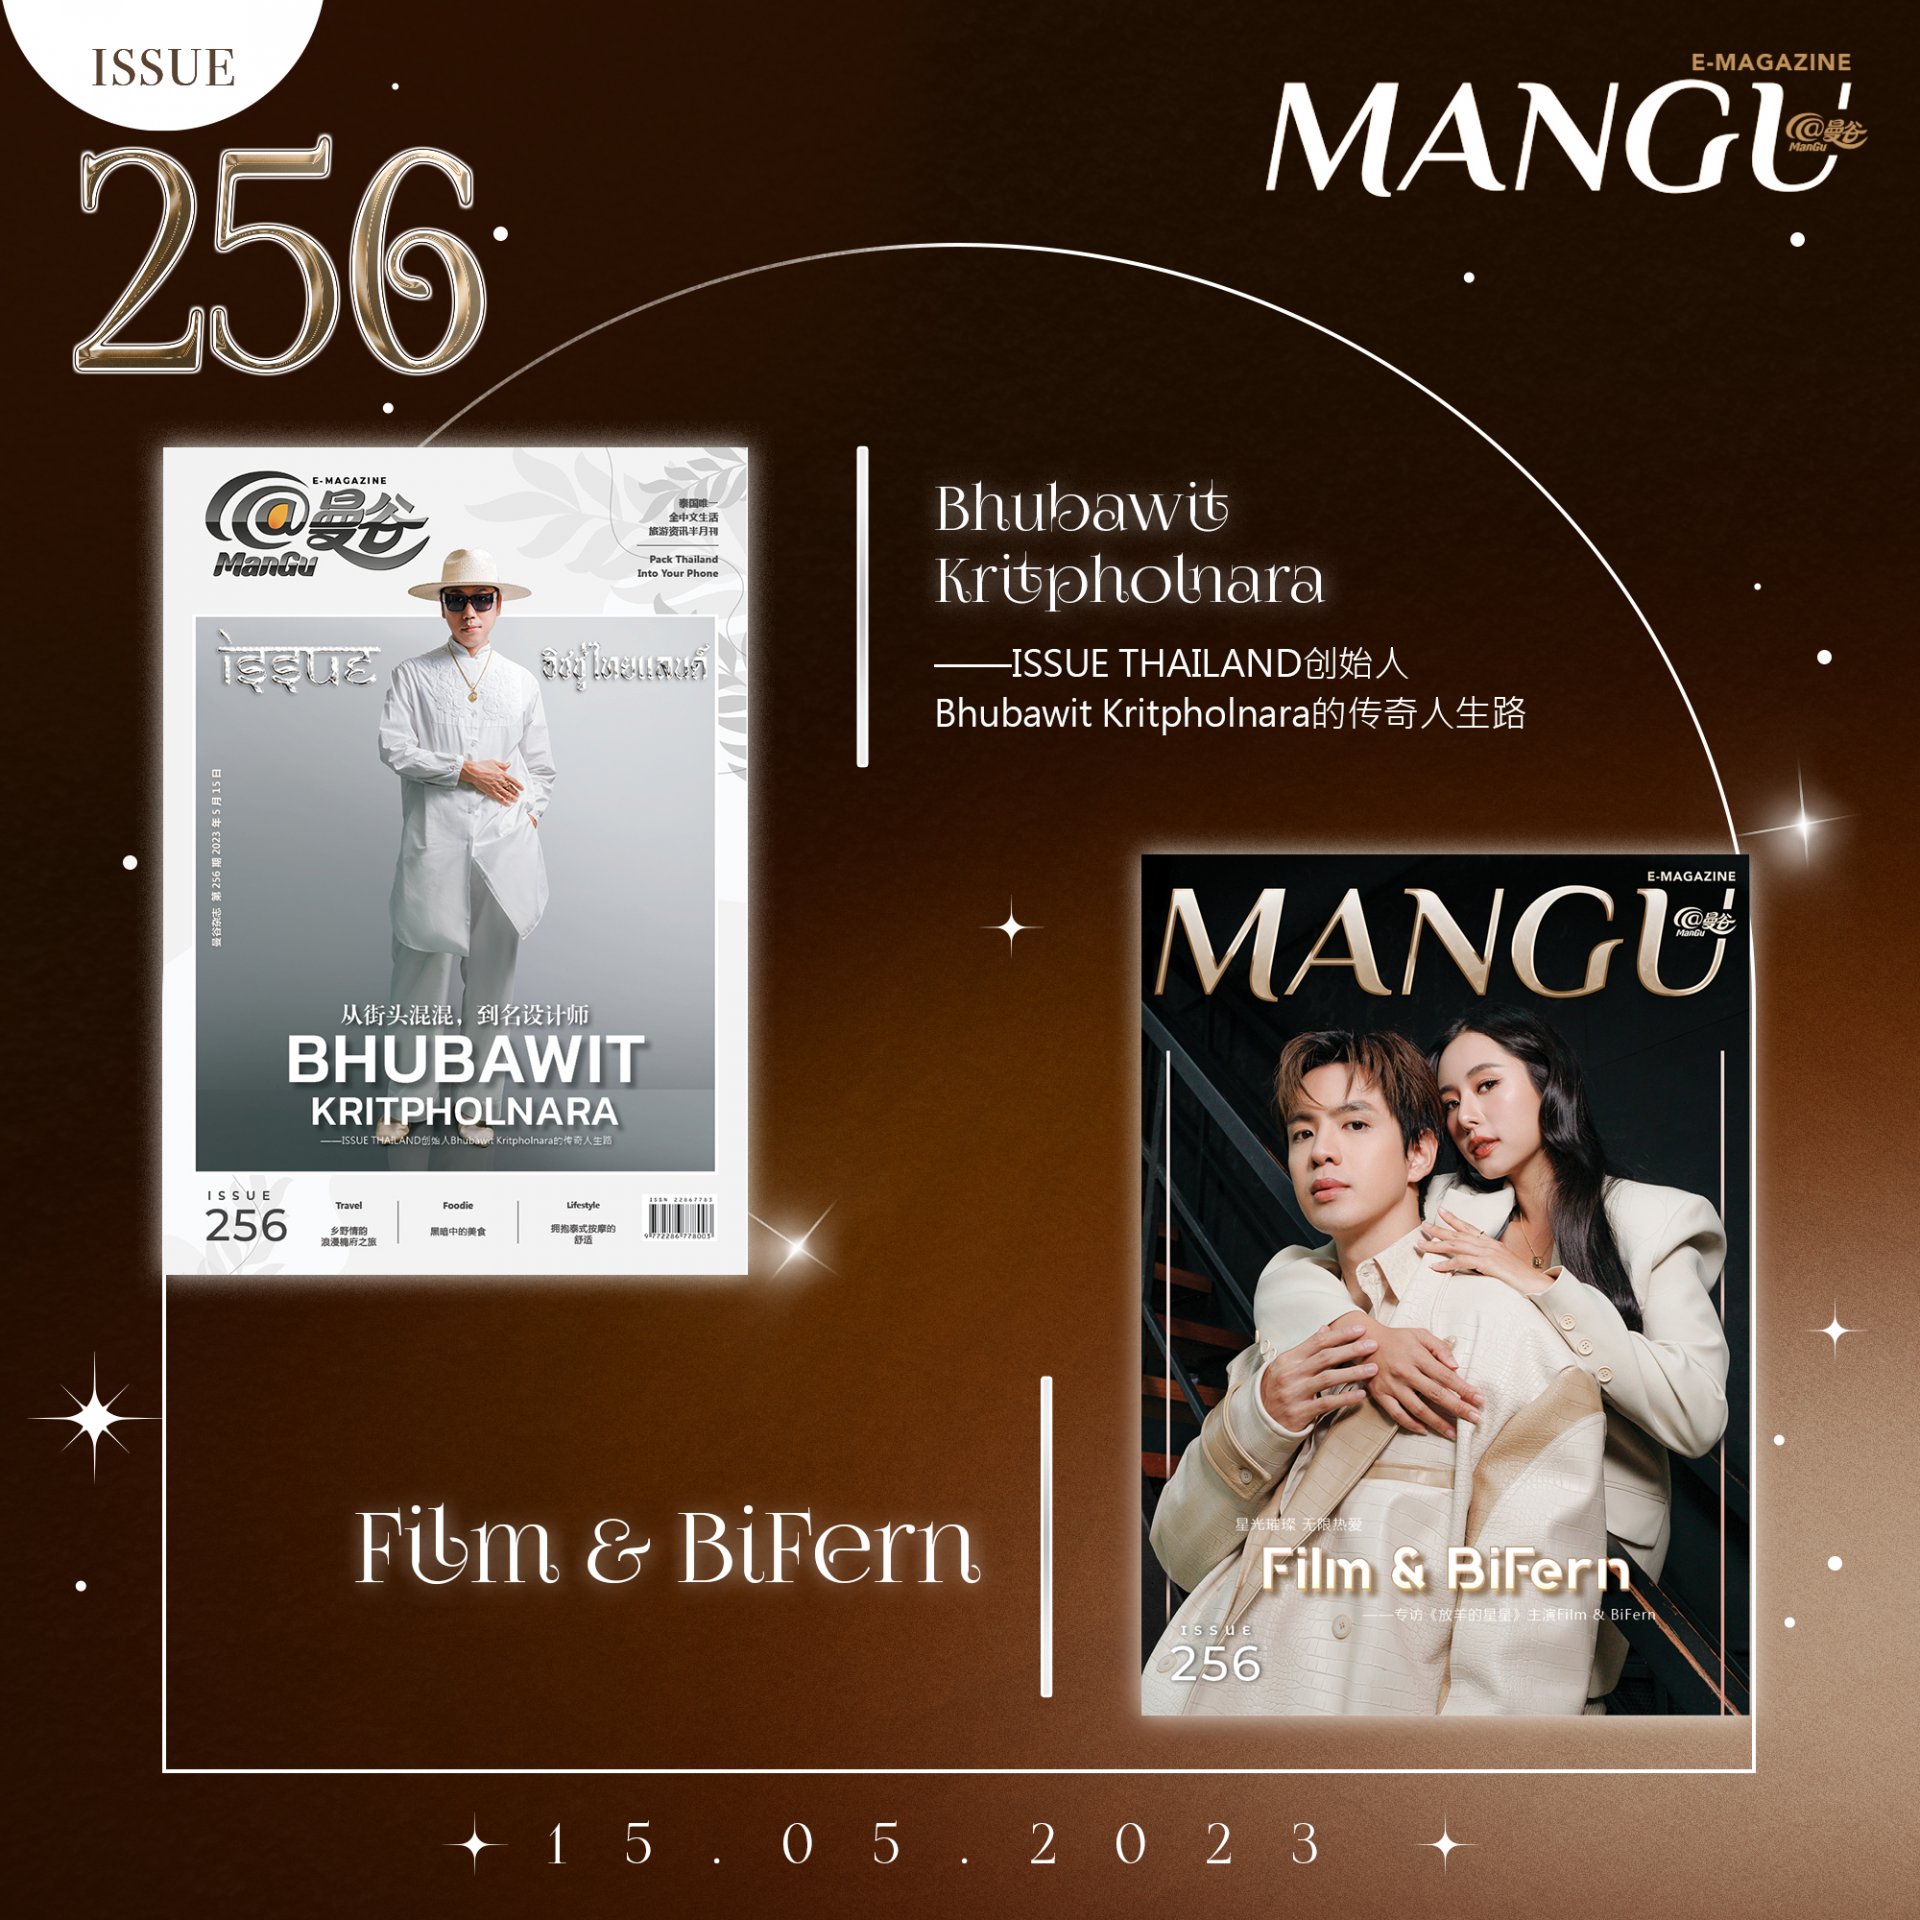 คุณภูภวิศ กฤตพลนารา ผู้ก่อตั้งแบรนด์ ISSUE THAILAND และ ฟิล์ม-ธนภัทร กับ ใบเฟิร์น-อัญชสา จากละครเรื่อง “รักนี้ต้องเจียระไน” ขึ้นปกนิตยสาร@ManGu